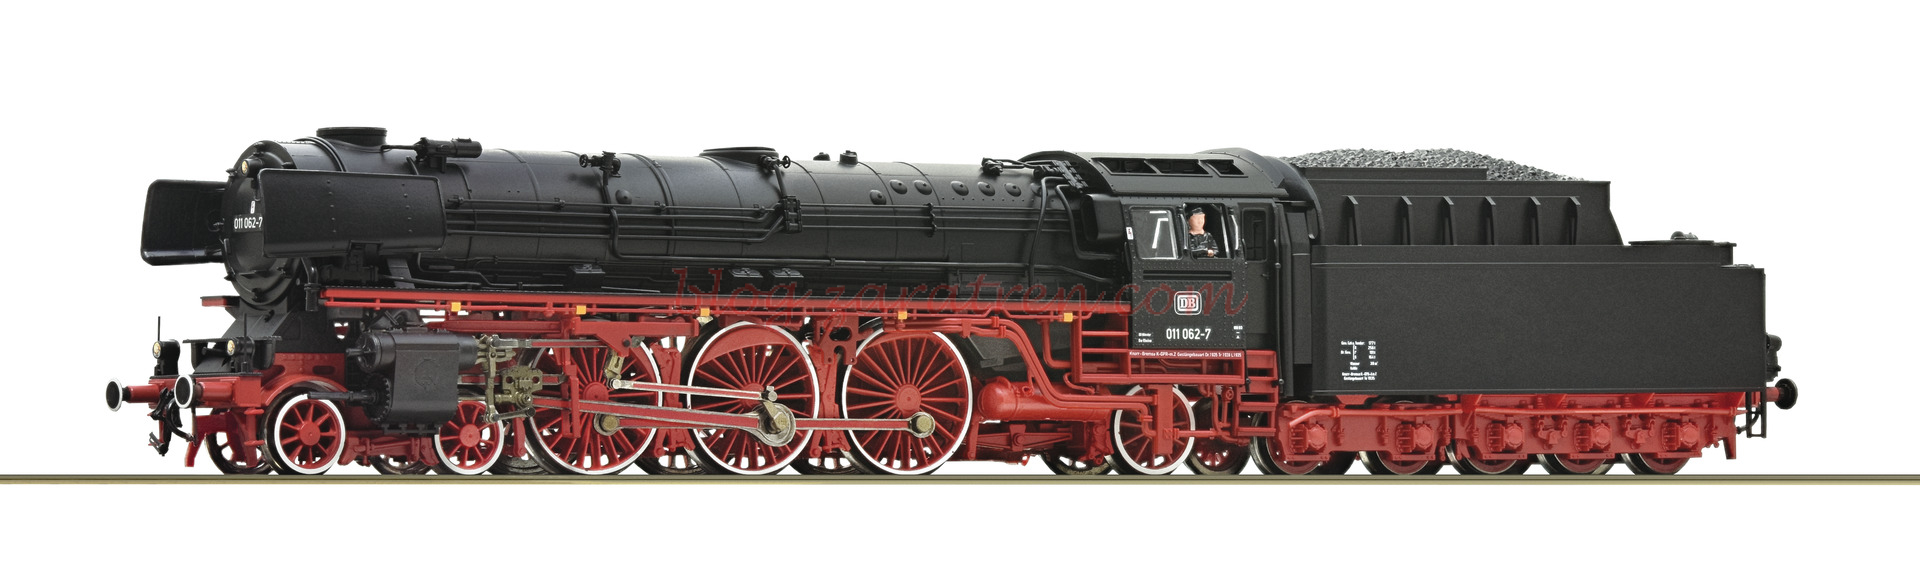 Roco – Locomotora de Vapor BR 011 062-7, DB, Época IV, Escala H0. Ref: 70051